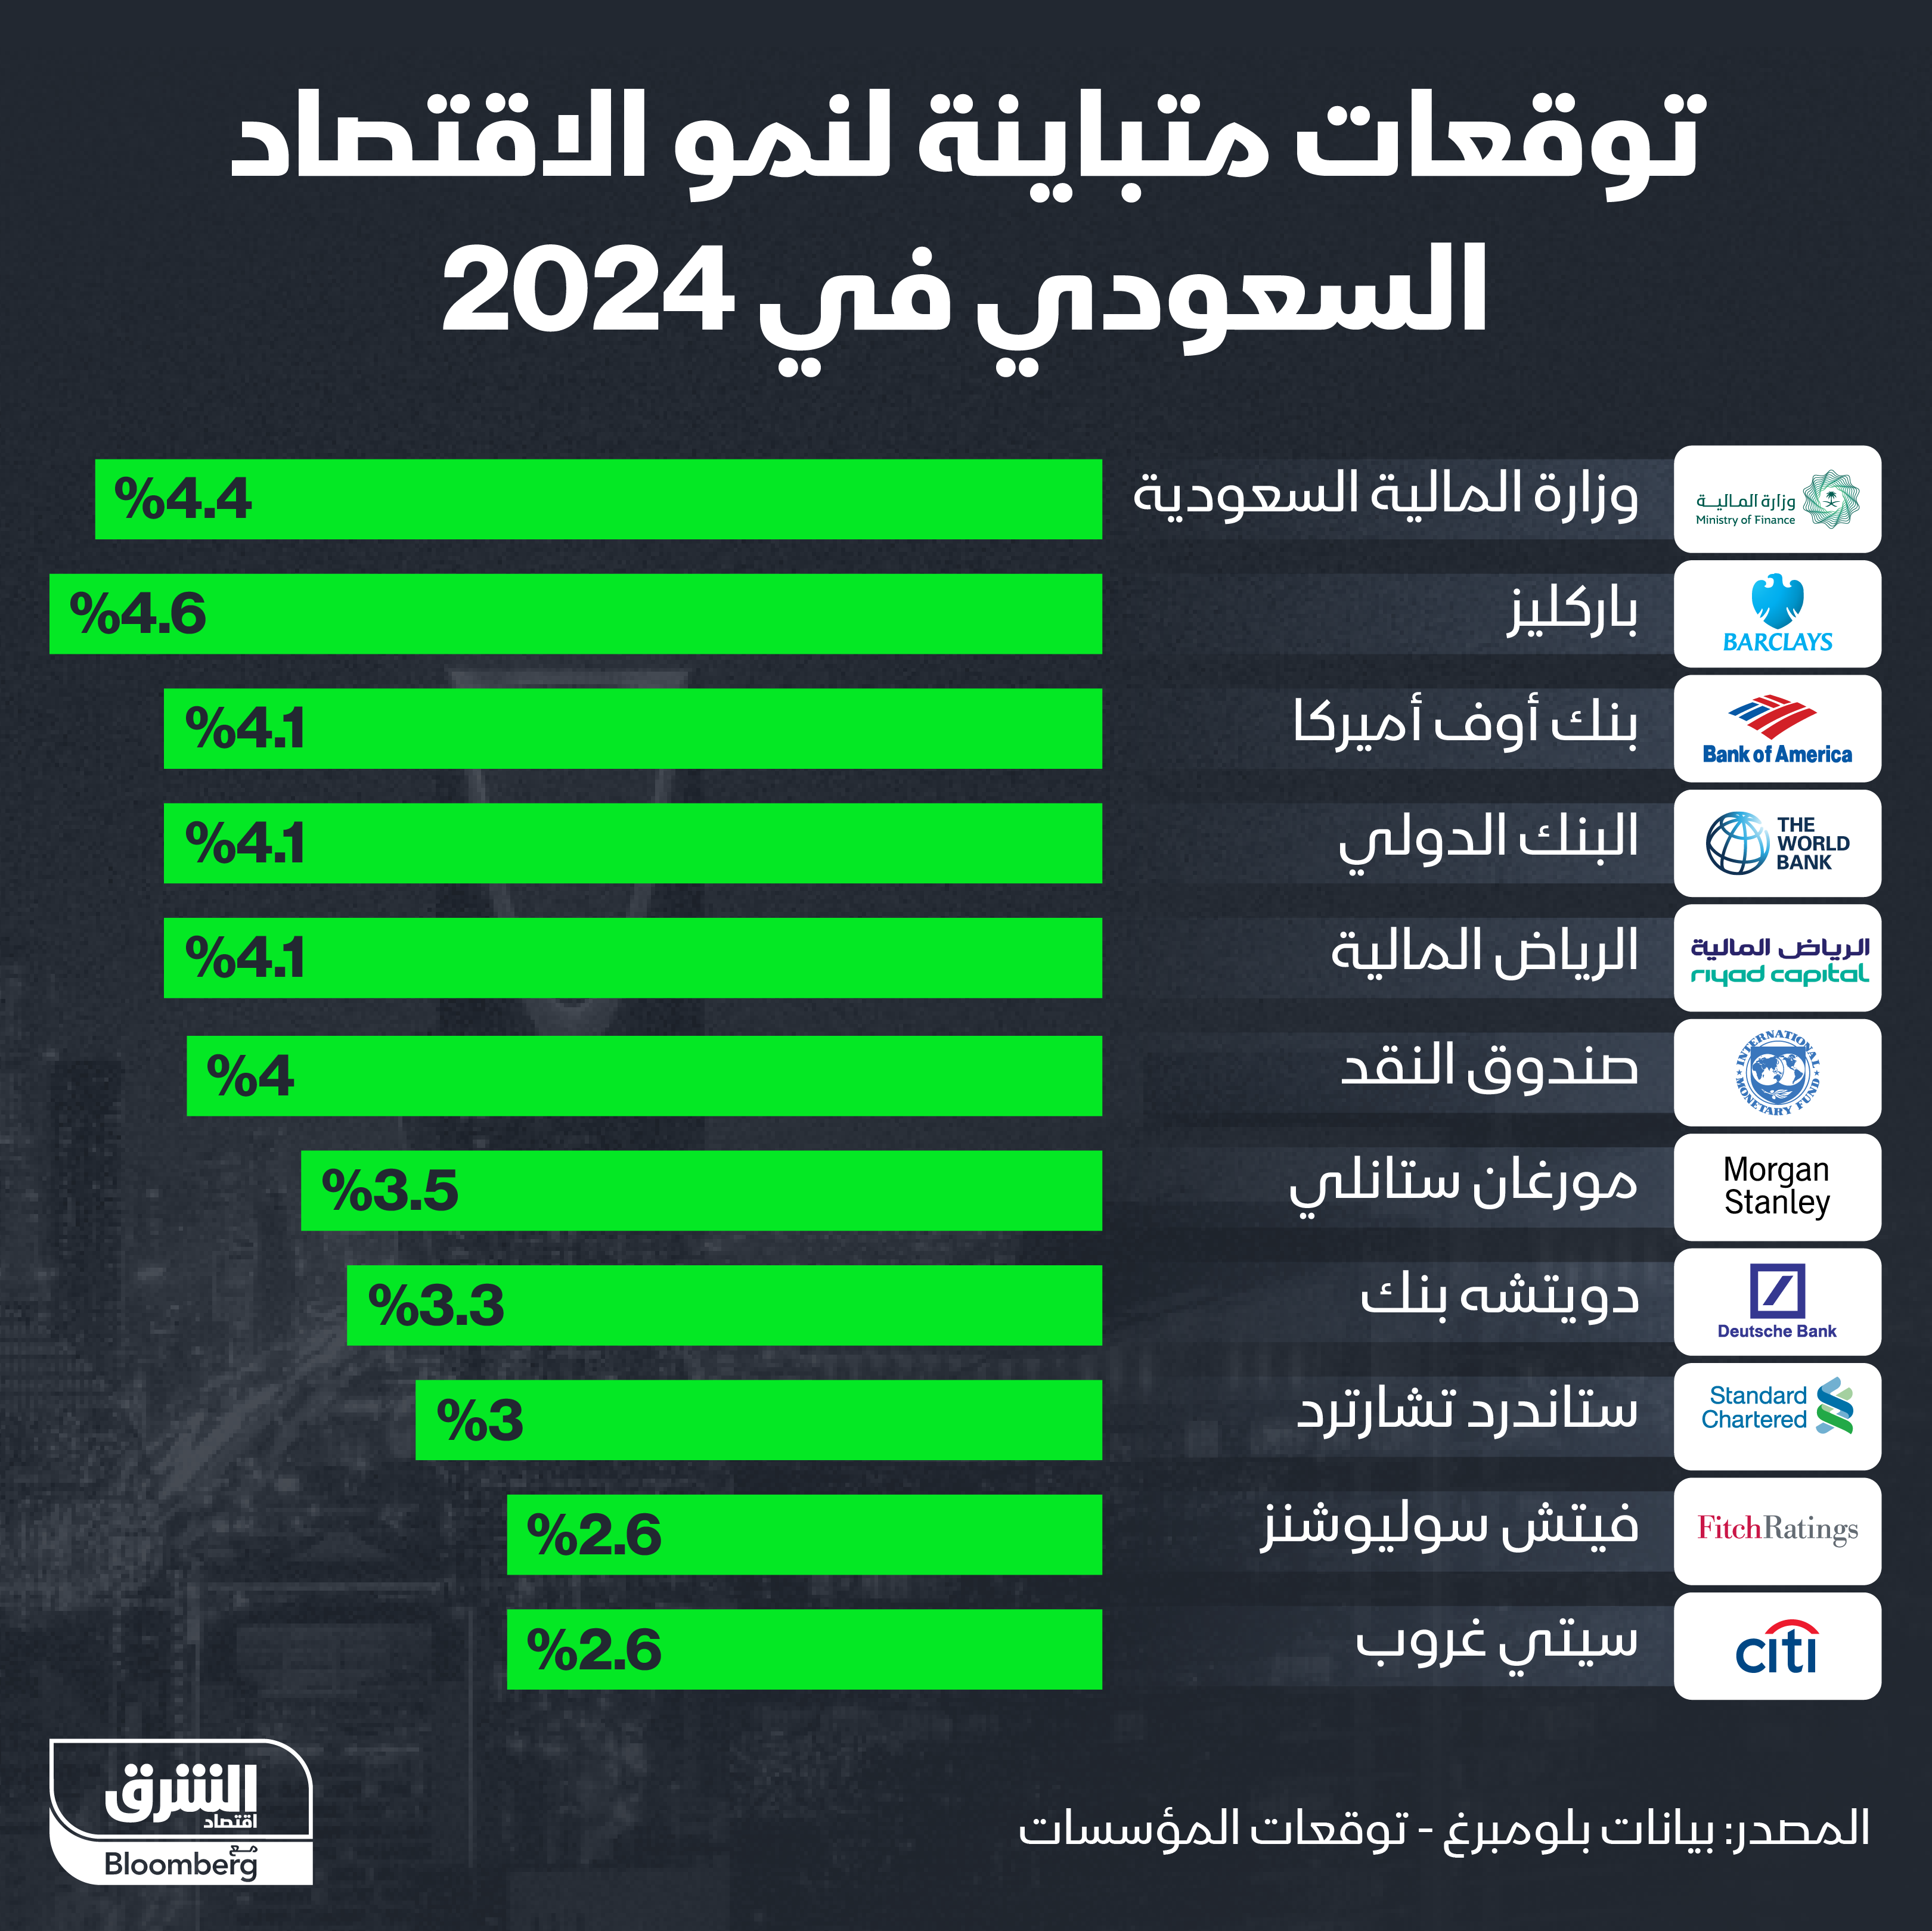 مصرف "باركليز" قدّم أعلى التوقعات لنمو الاقتصاد السعودي في 2024 عند 4.6% 